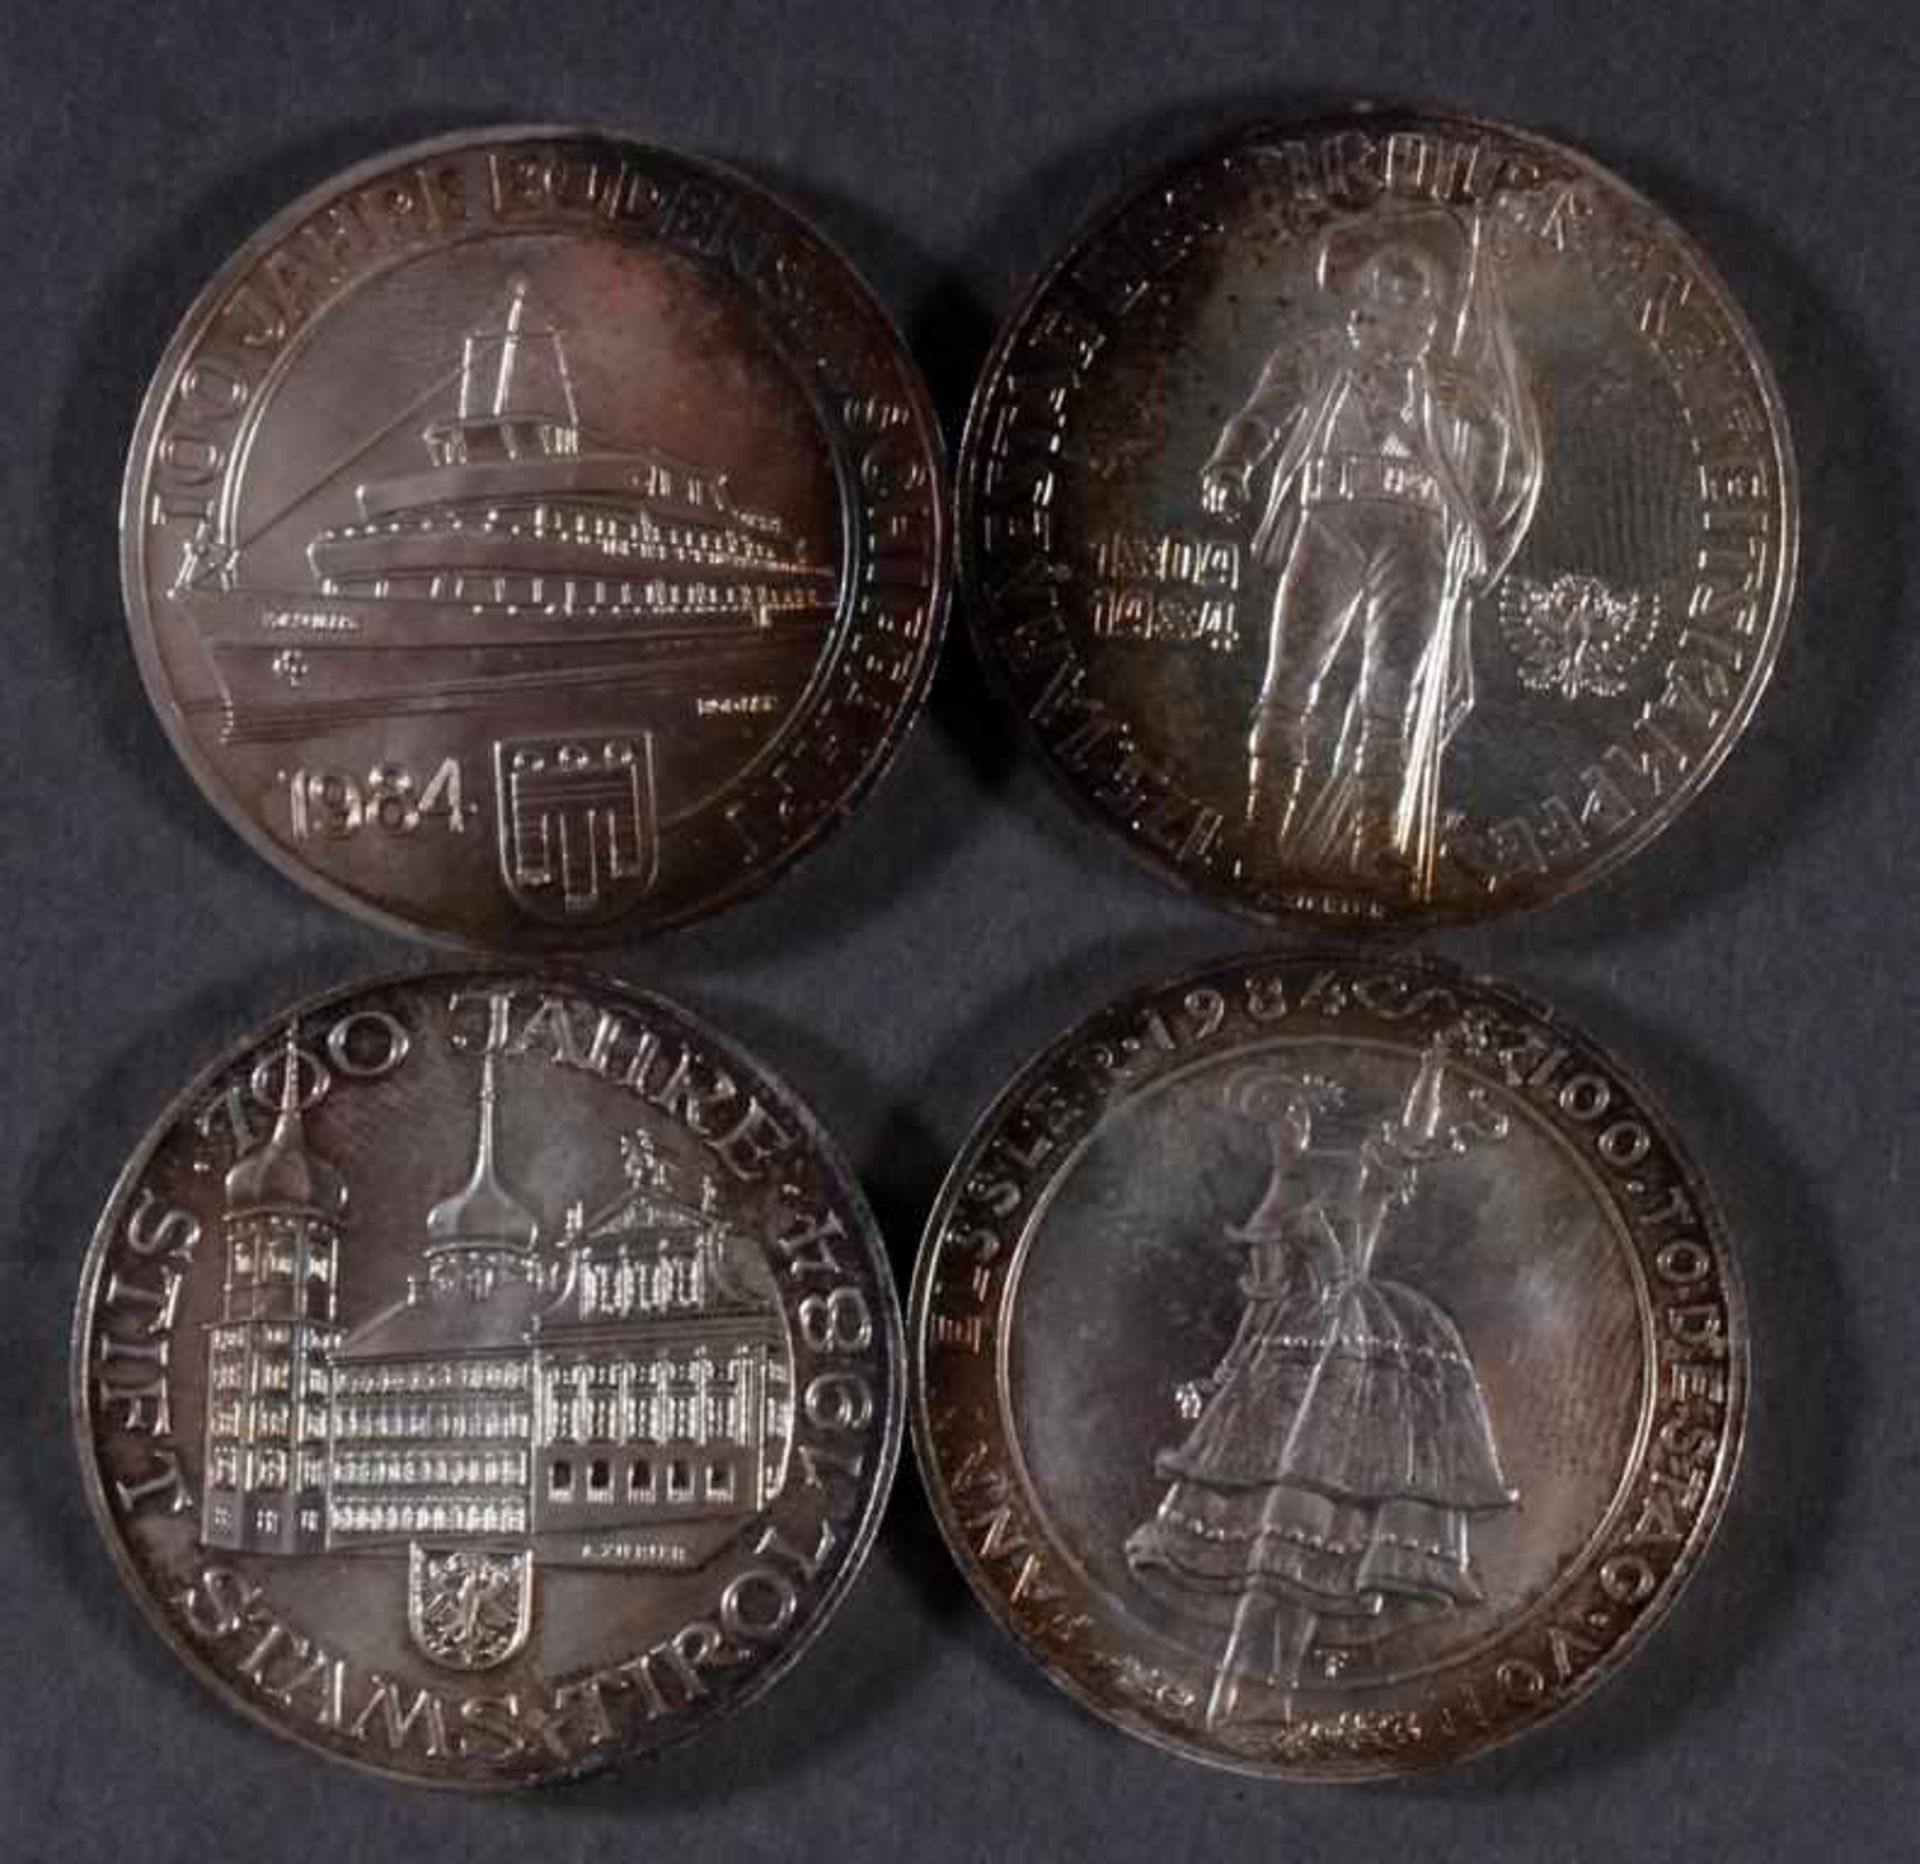 Österreich 2. Republik, 4 Stück 500 Schilling Münzen von 1984